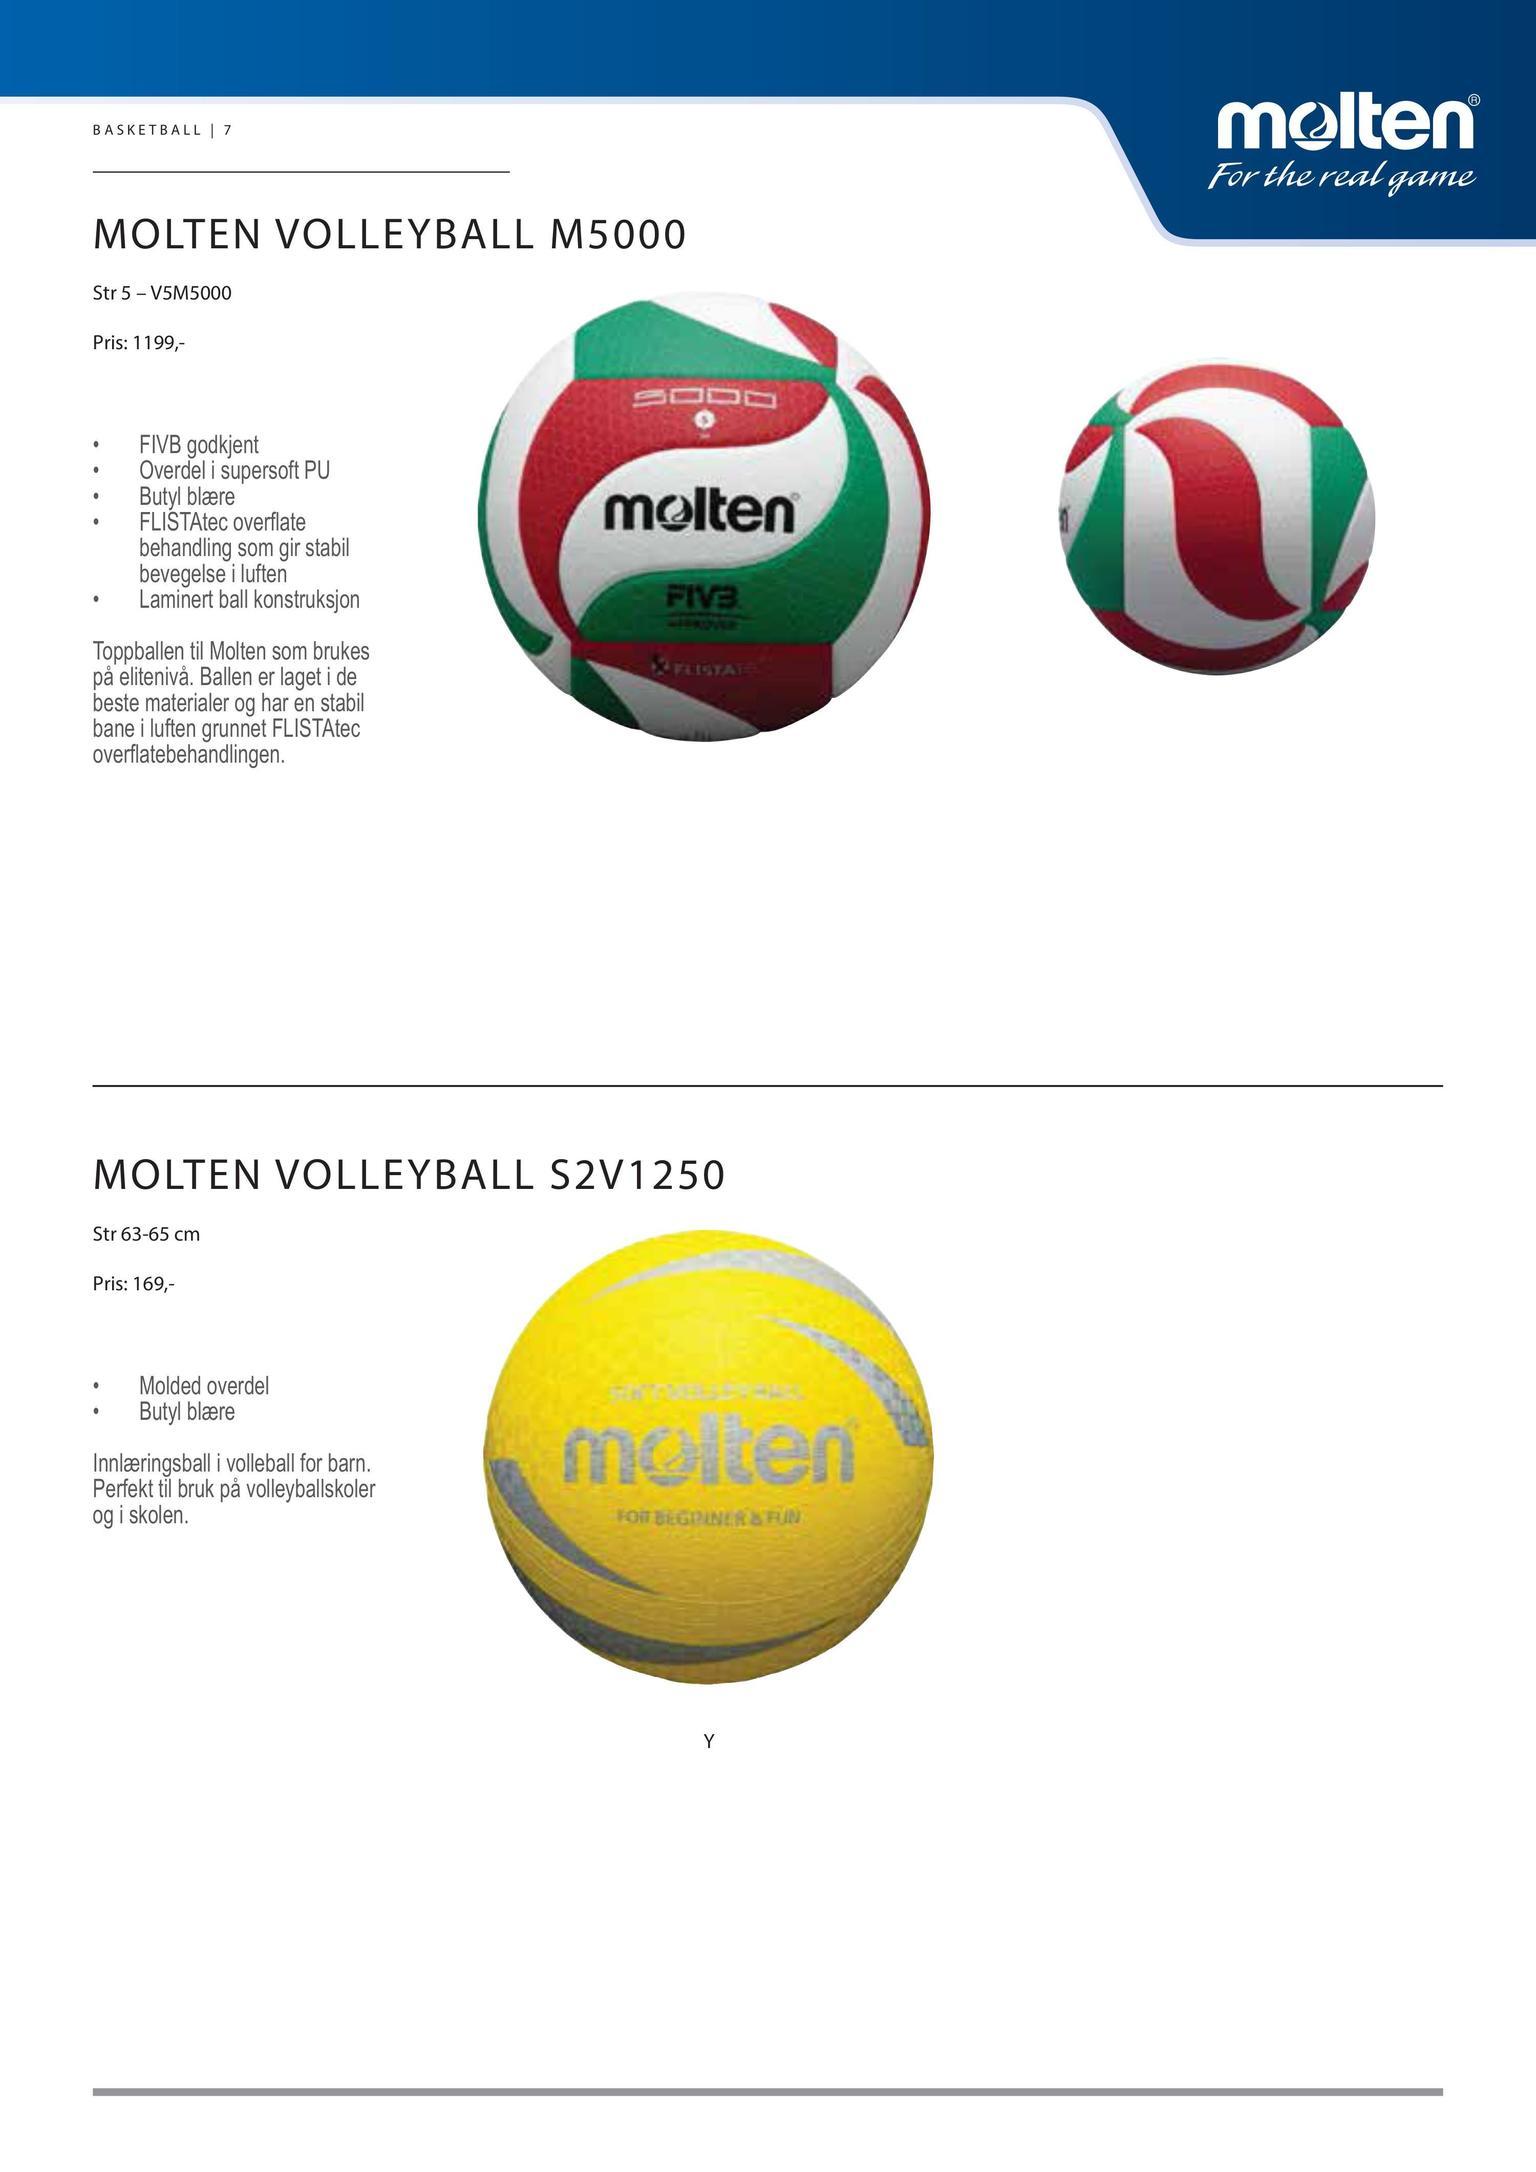 Five Ball Diadora Logo - Sport og Outdoor 2017 diadora Molten 2017 FW katalog